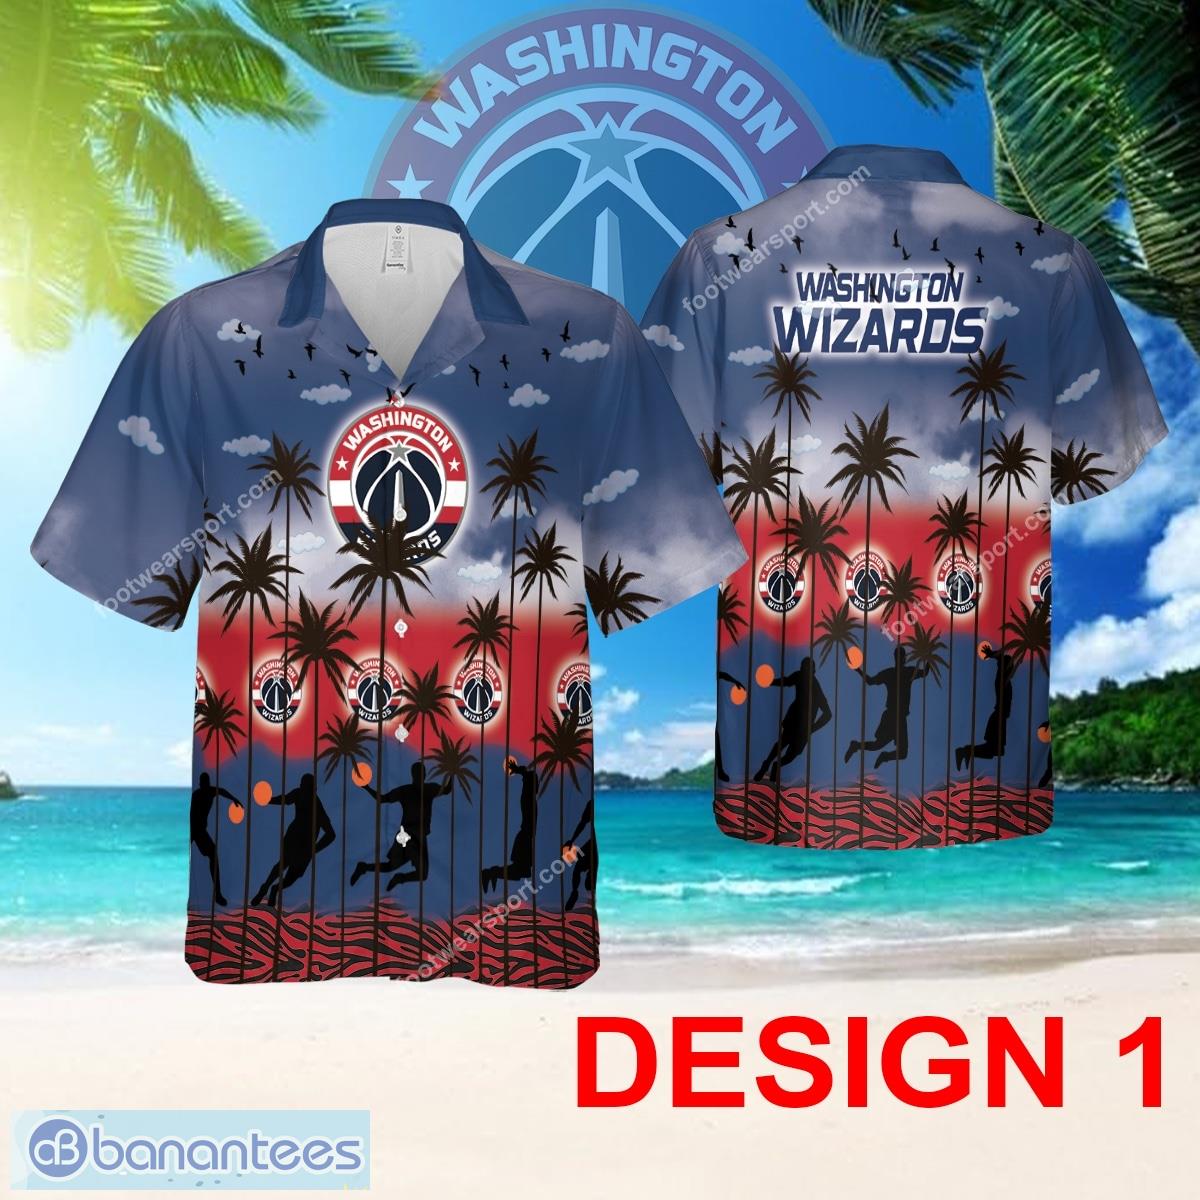 Washington Wizards Hawaiian Shirt Pattern Coconut Tree AOP For Men And Women - Design 1 NBA Washington Wizards Hawaiian Shirt Tree Pattern